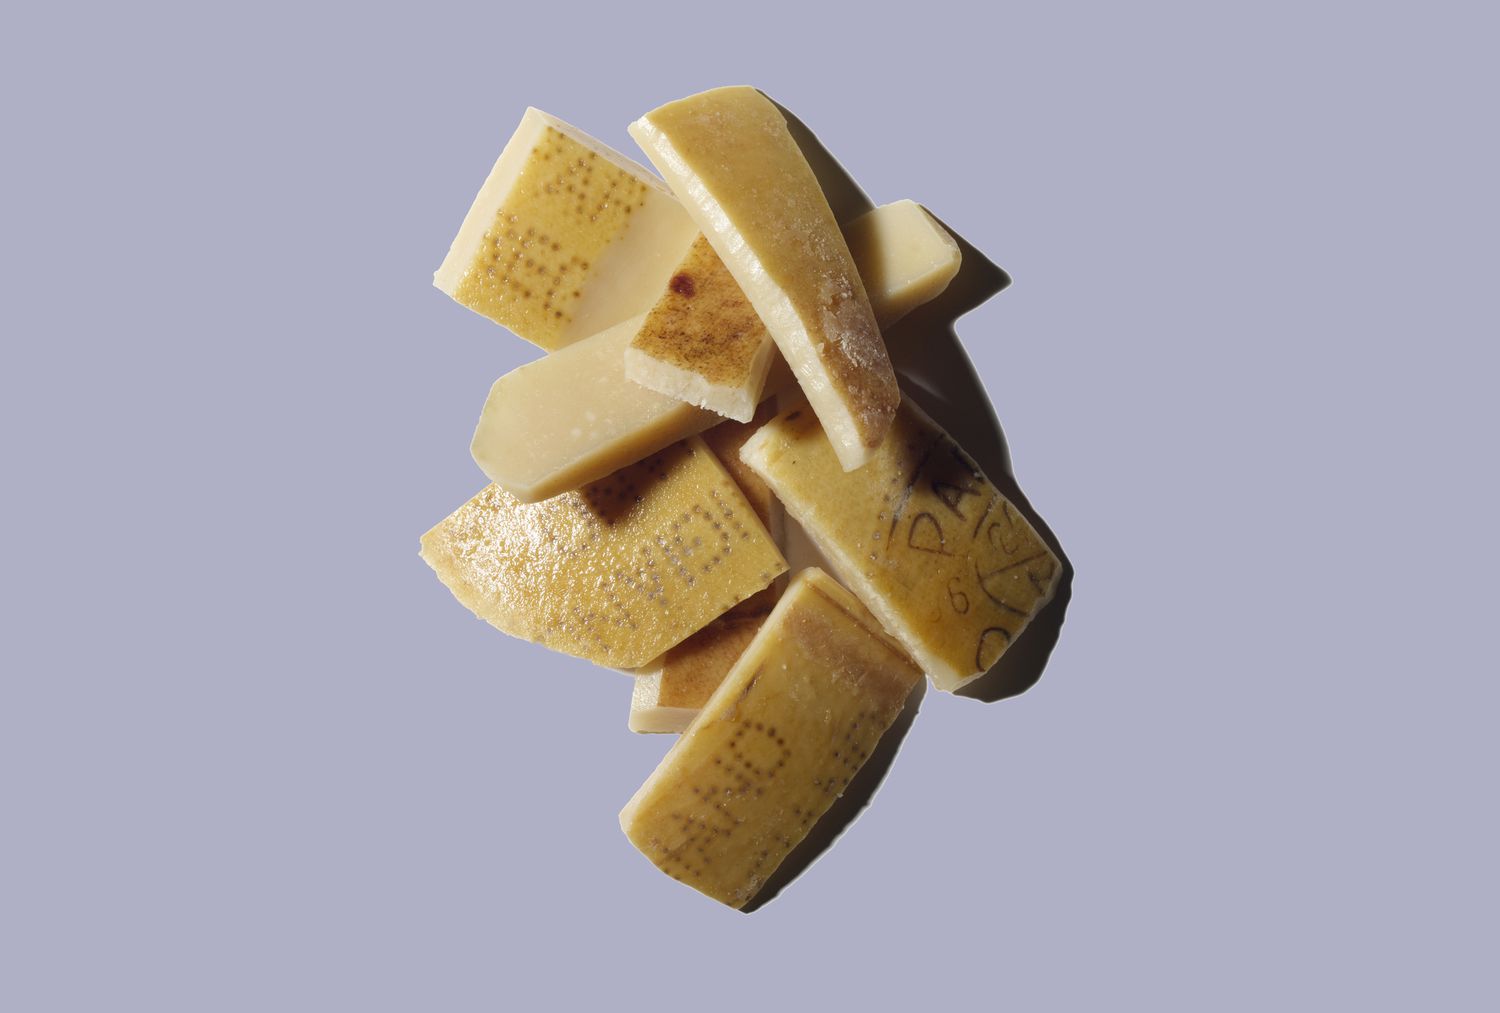 Fotos de epidermis de queso de la piel del queso